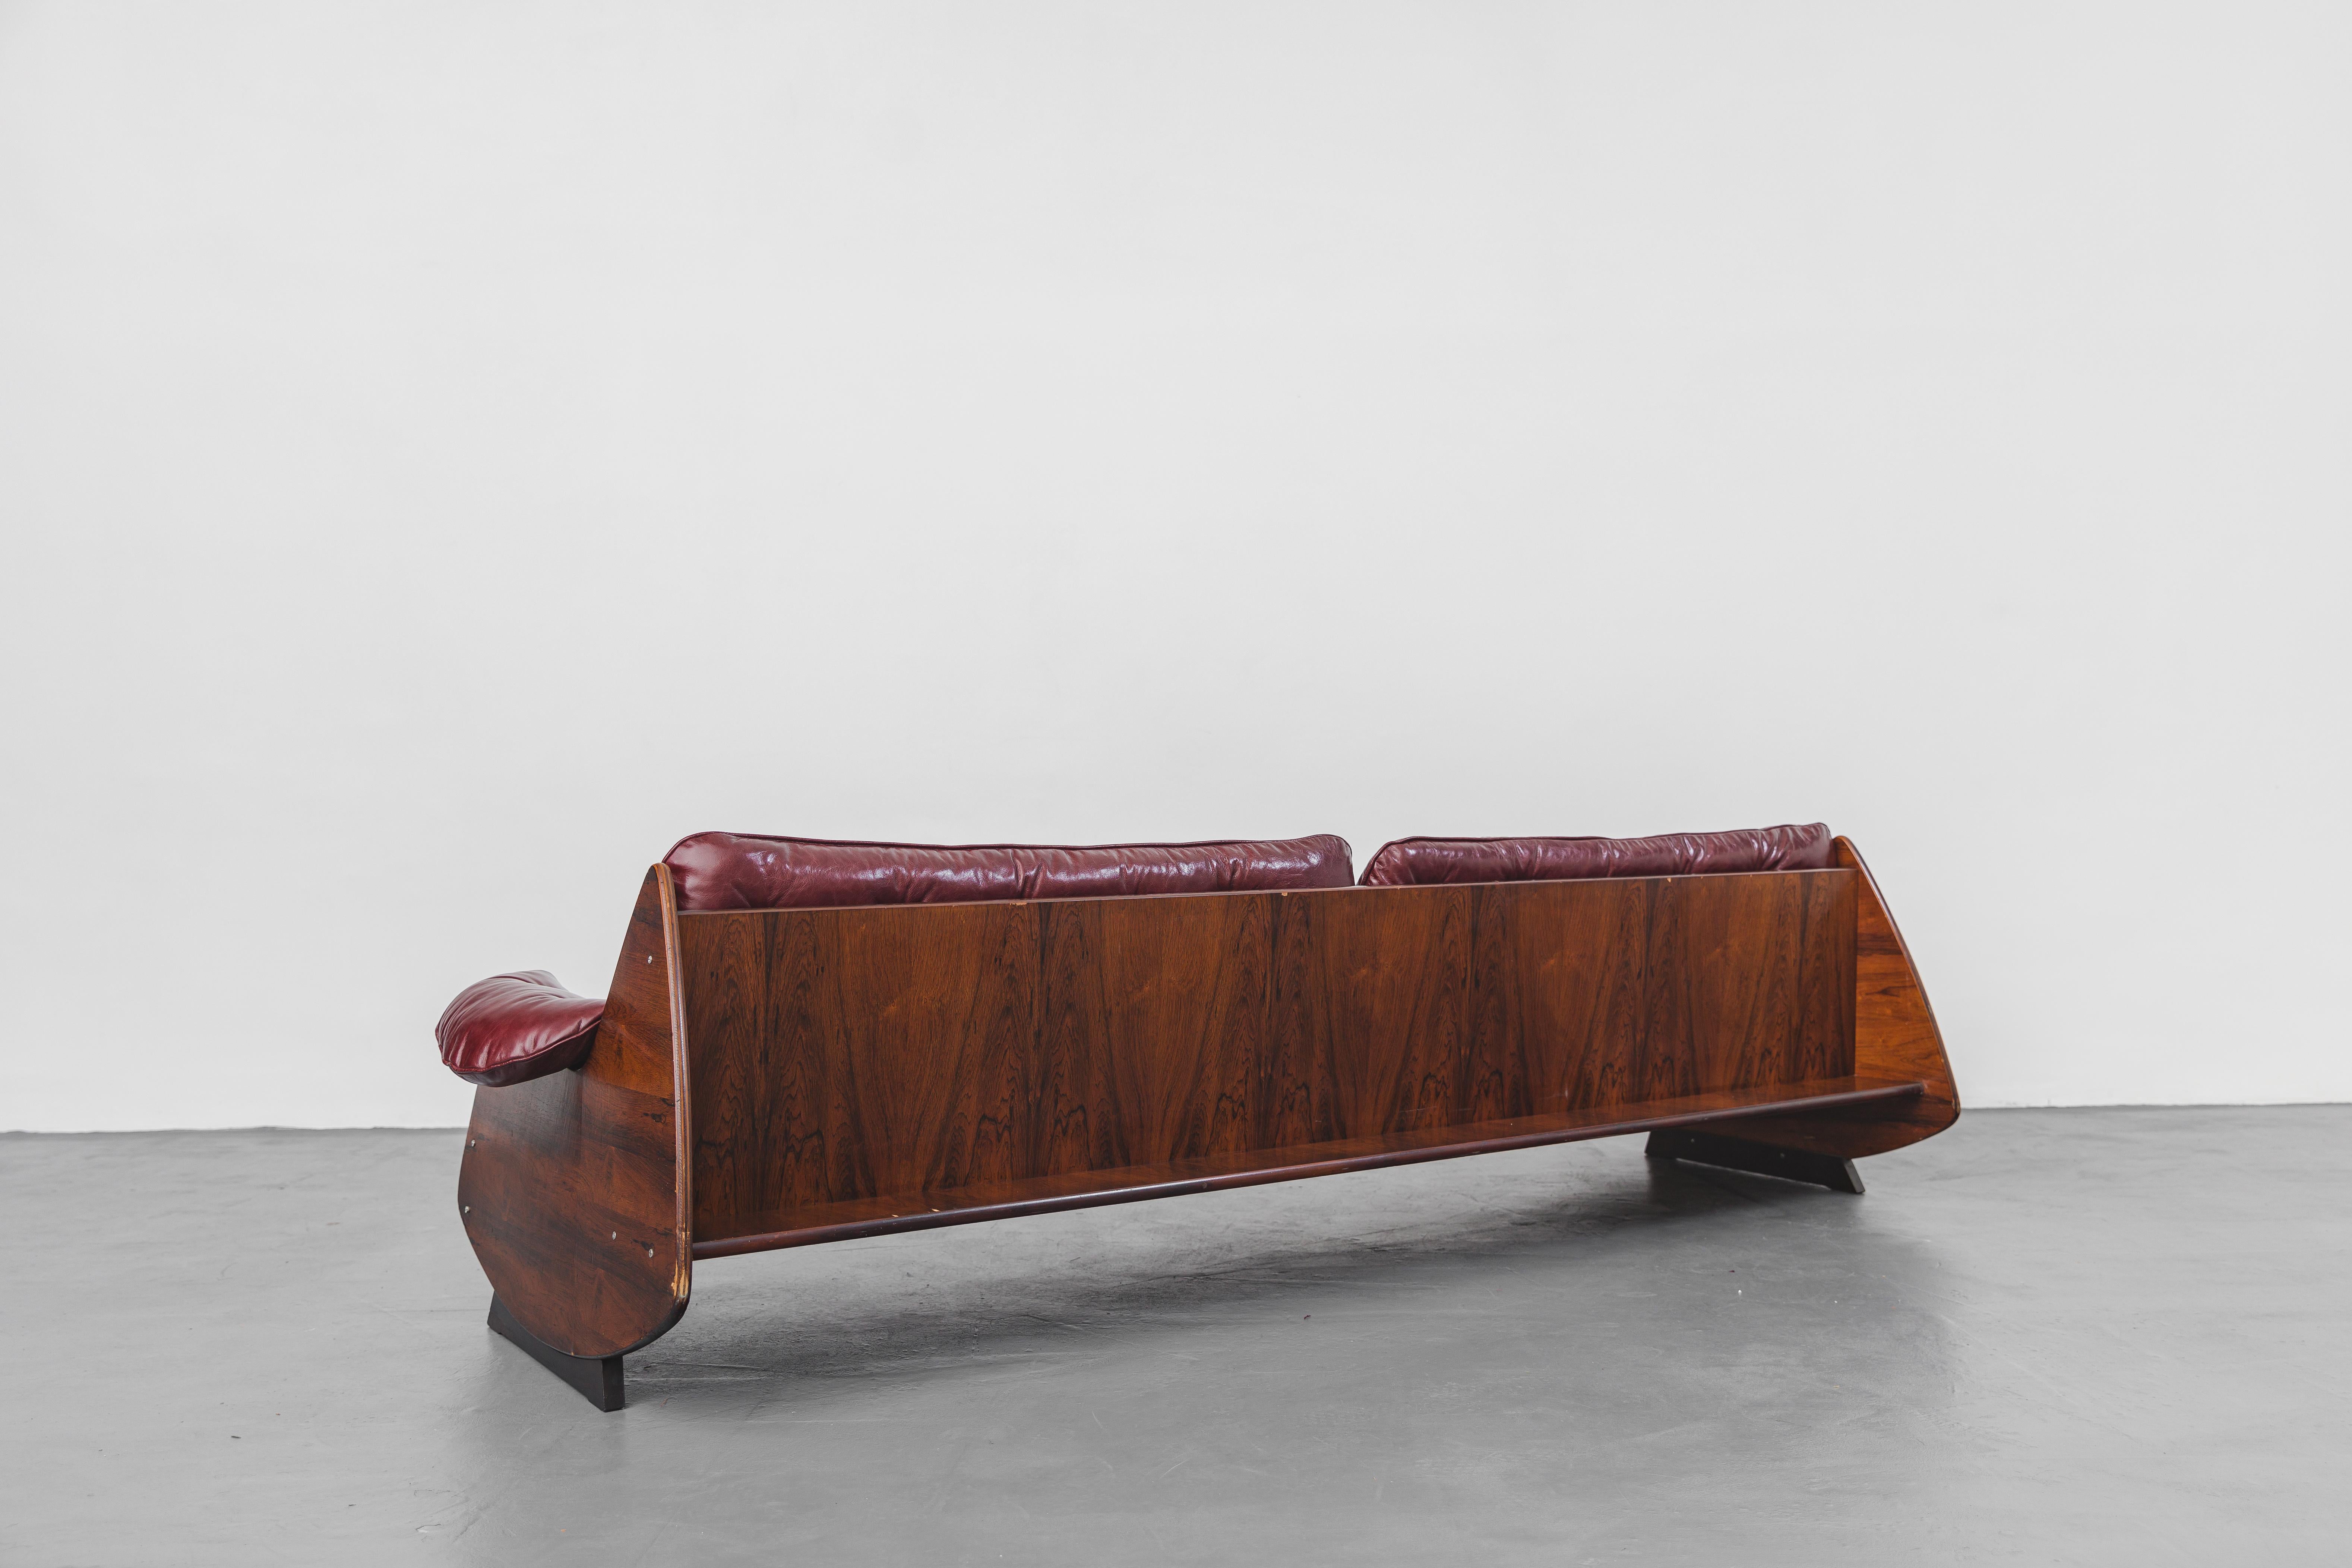 Das Ameba-Sofa wurde in den 1960er Jahren hergestellt und Jorge Zalszupin (1922-2020) zugeschrieben.

Das massive Sofa aus Palisanderfurnier ist eine perfekte Kombination aus organischen Formen mit übergroßen Lederkissen und Rückenfächern für kleine